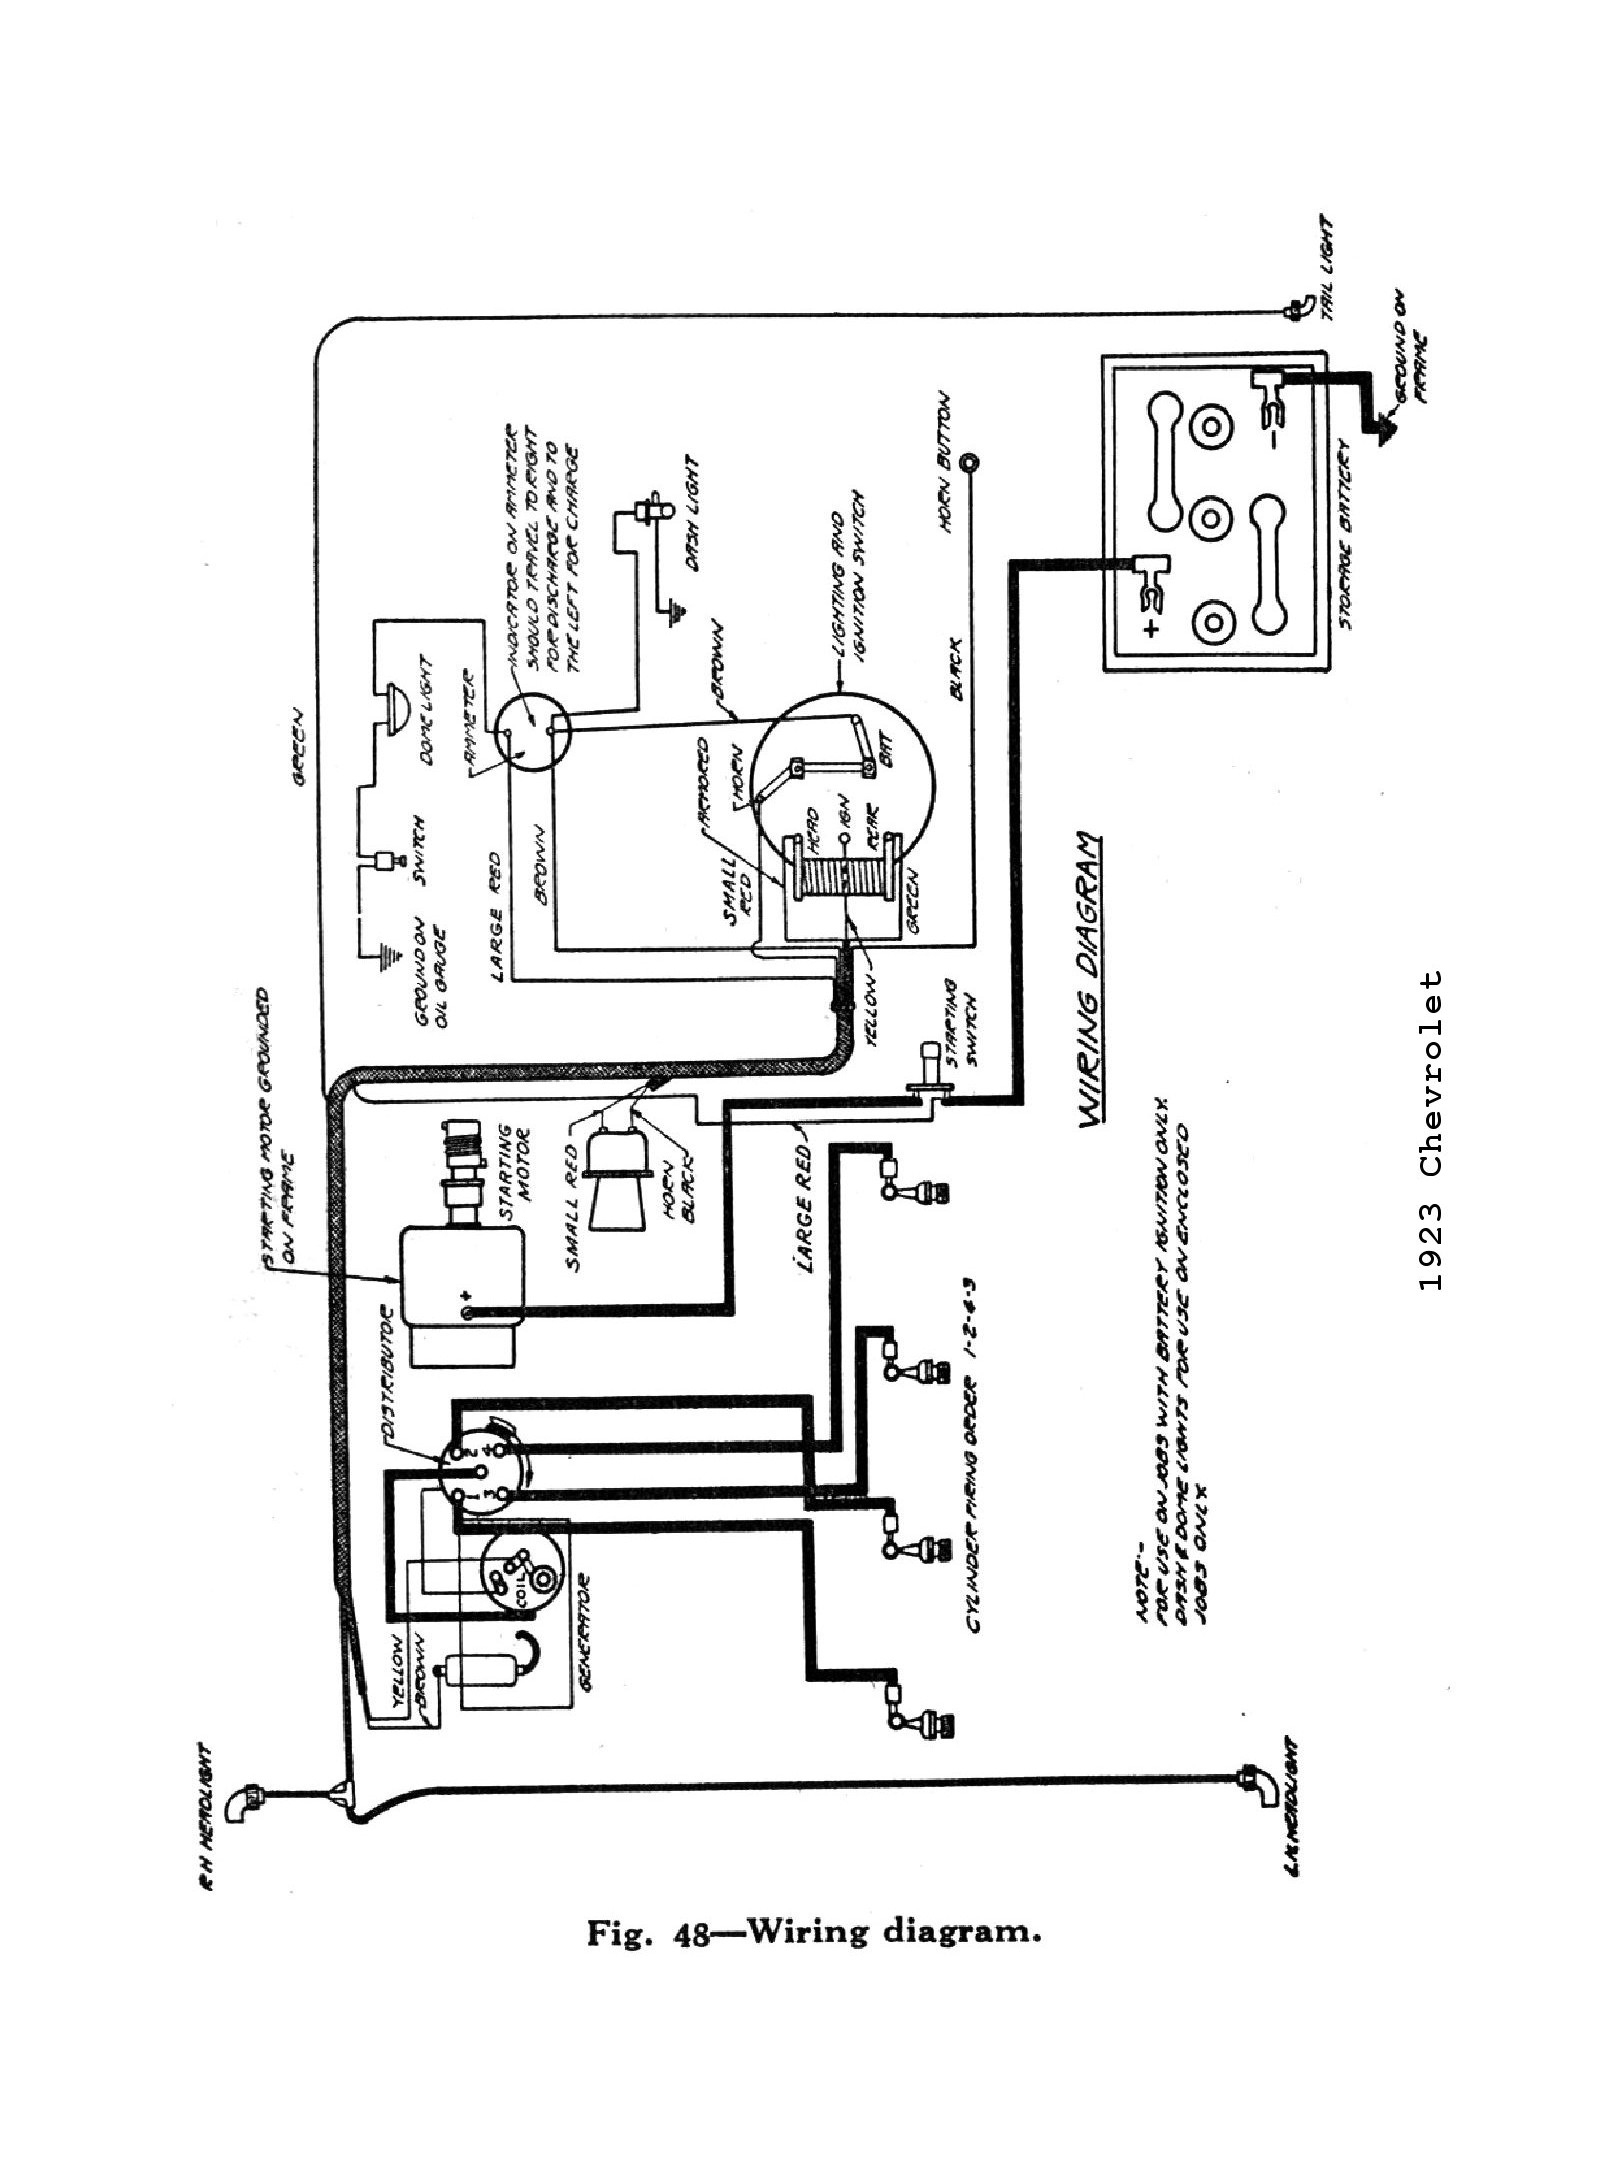 Chevrolet Coil Wiring Diagram - Schema Wiring Diagram - Coil Wiring Diagram